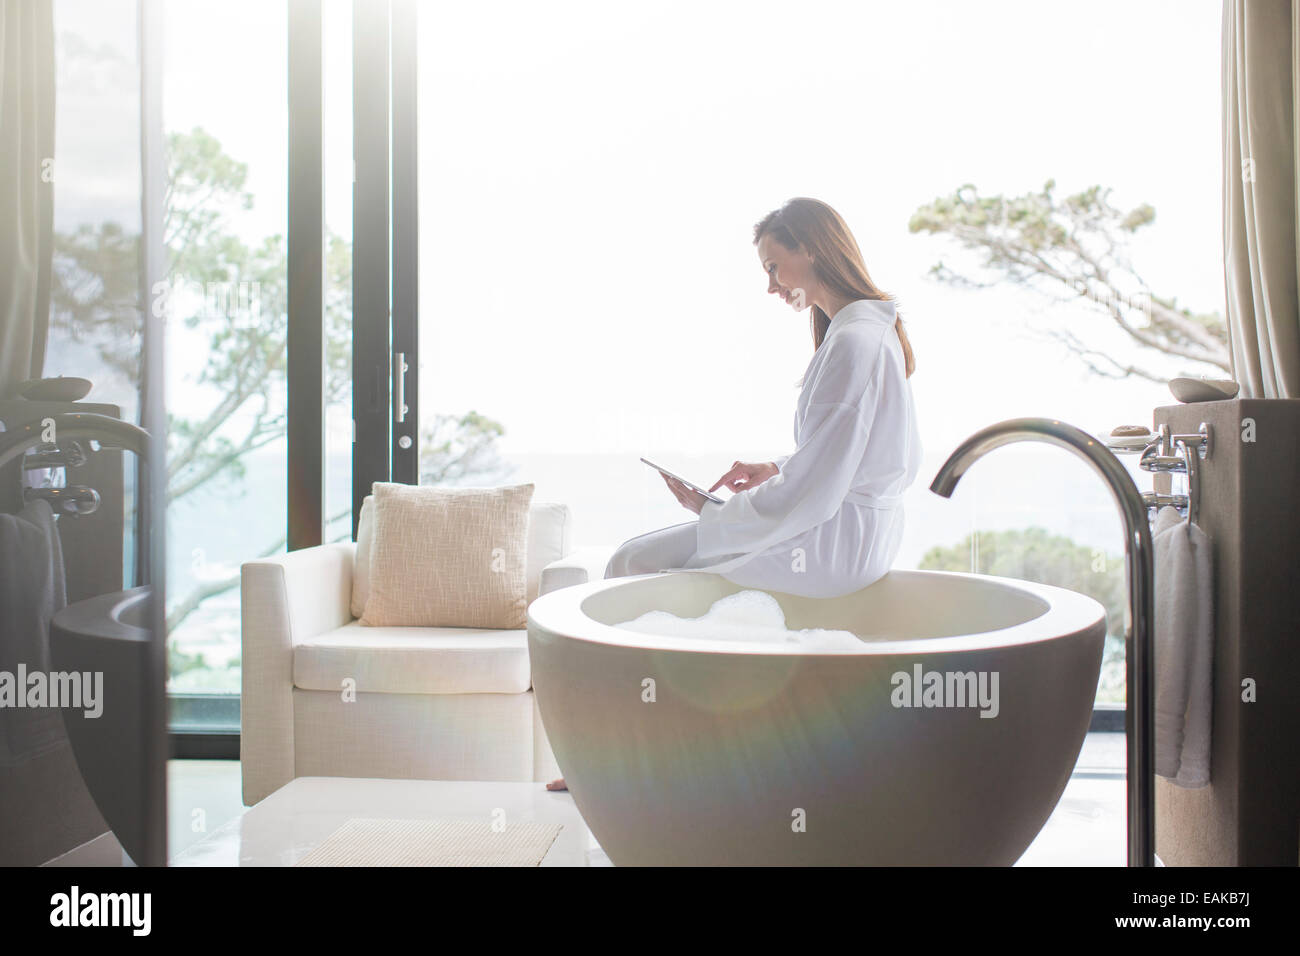 Woman wearing white peignoir assis sur le bord d'une baignoire moderne et using digital tablet Banque D'Images